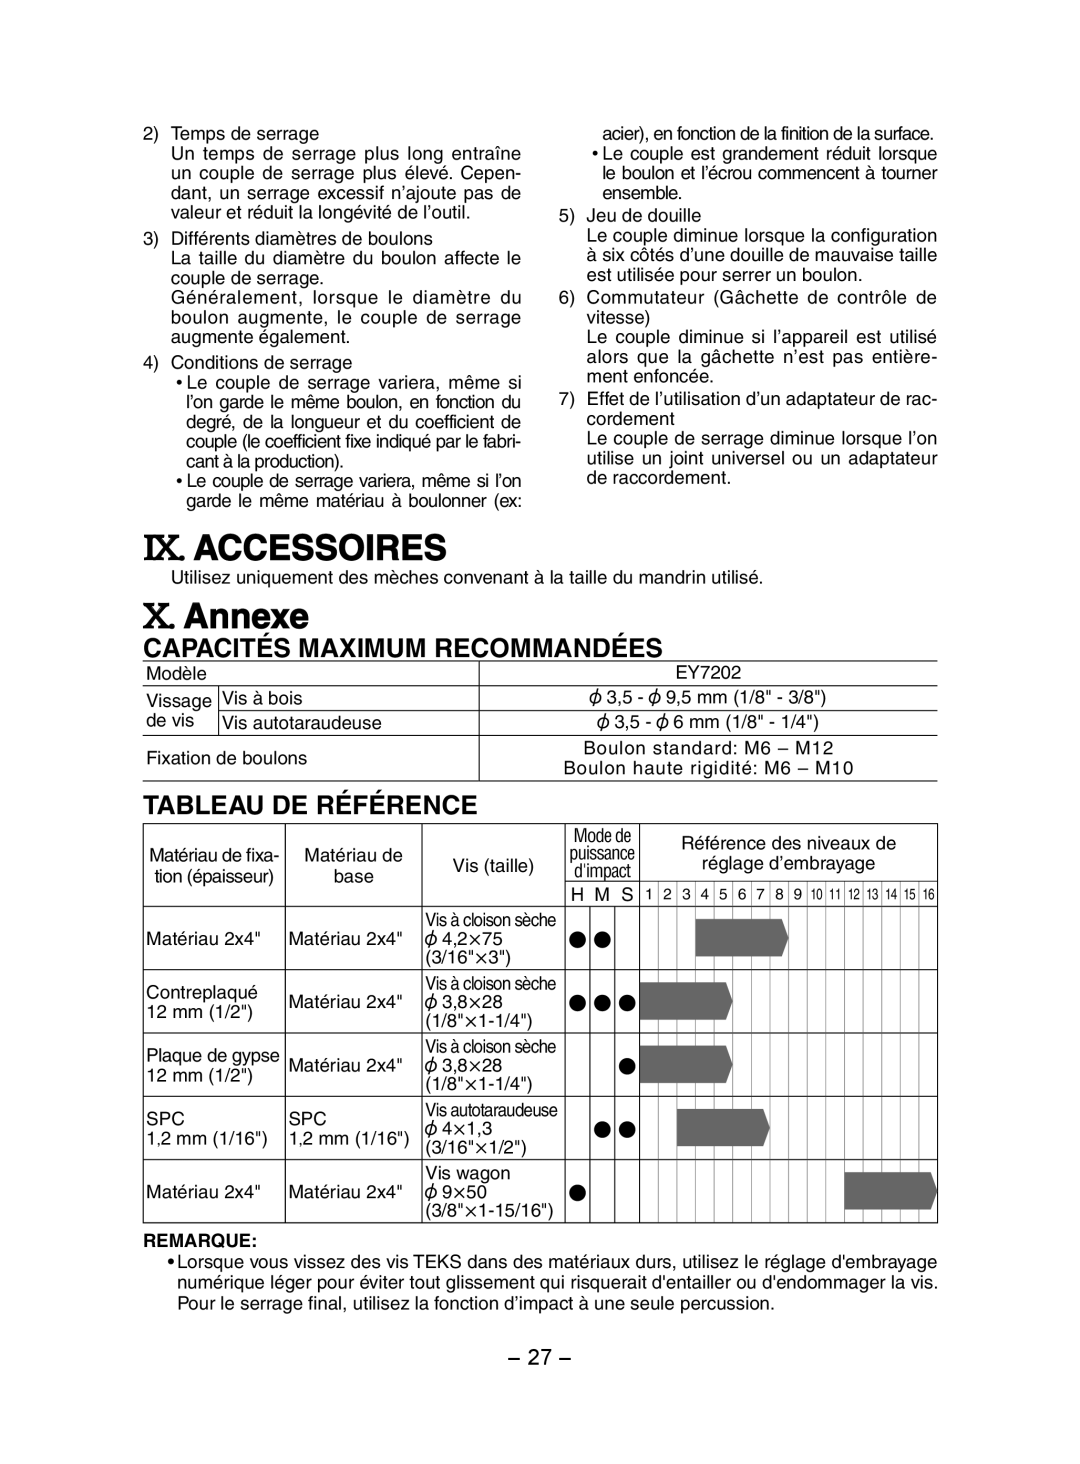 Panasonic EY7202 operating instructions Ix. Accessoires, X. Annexe, Capacités Maximum Recommandées, Tableau De Référence 